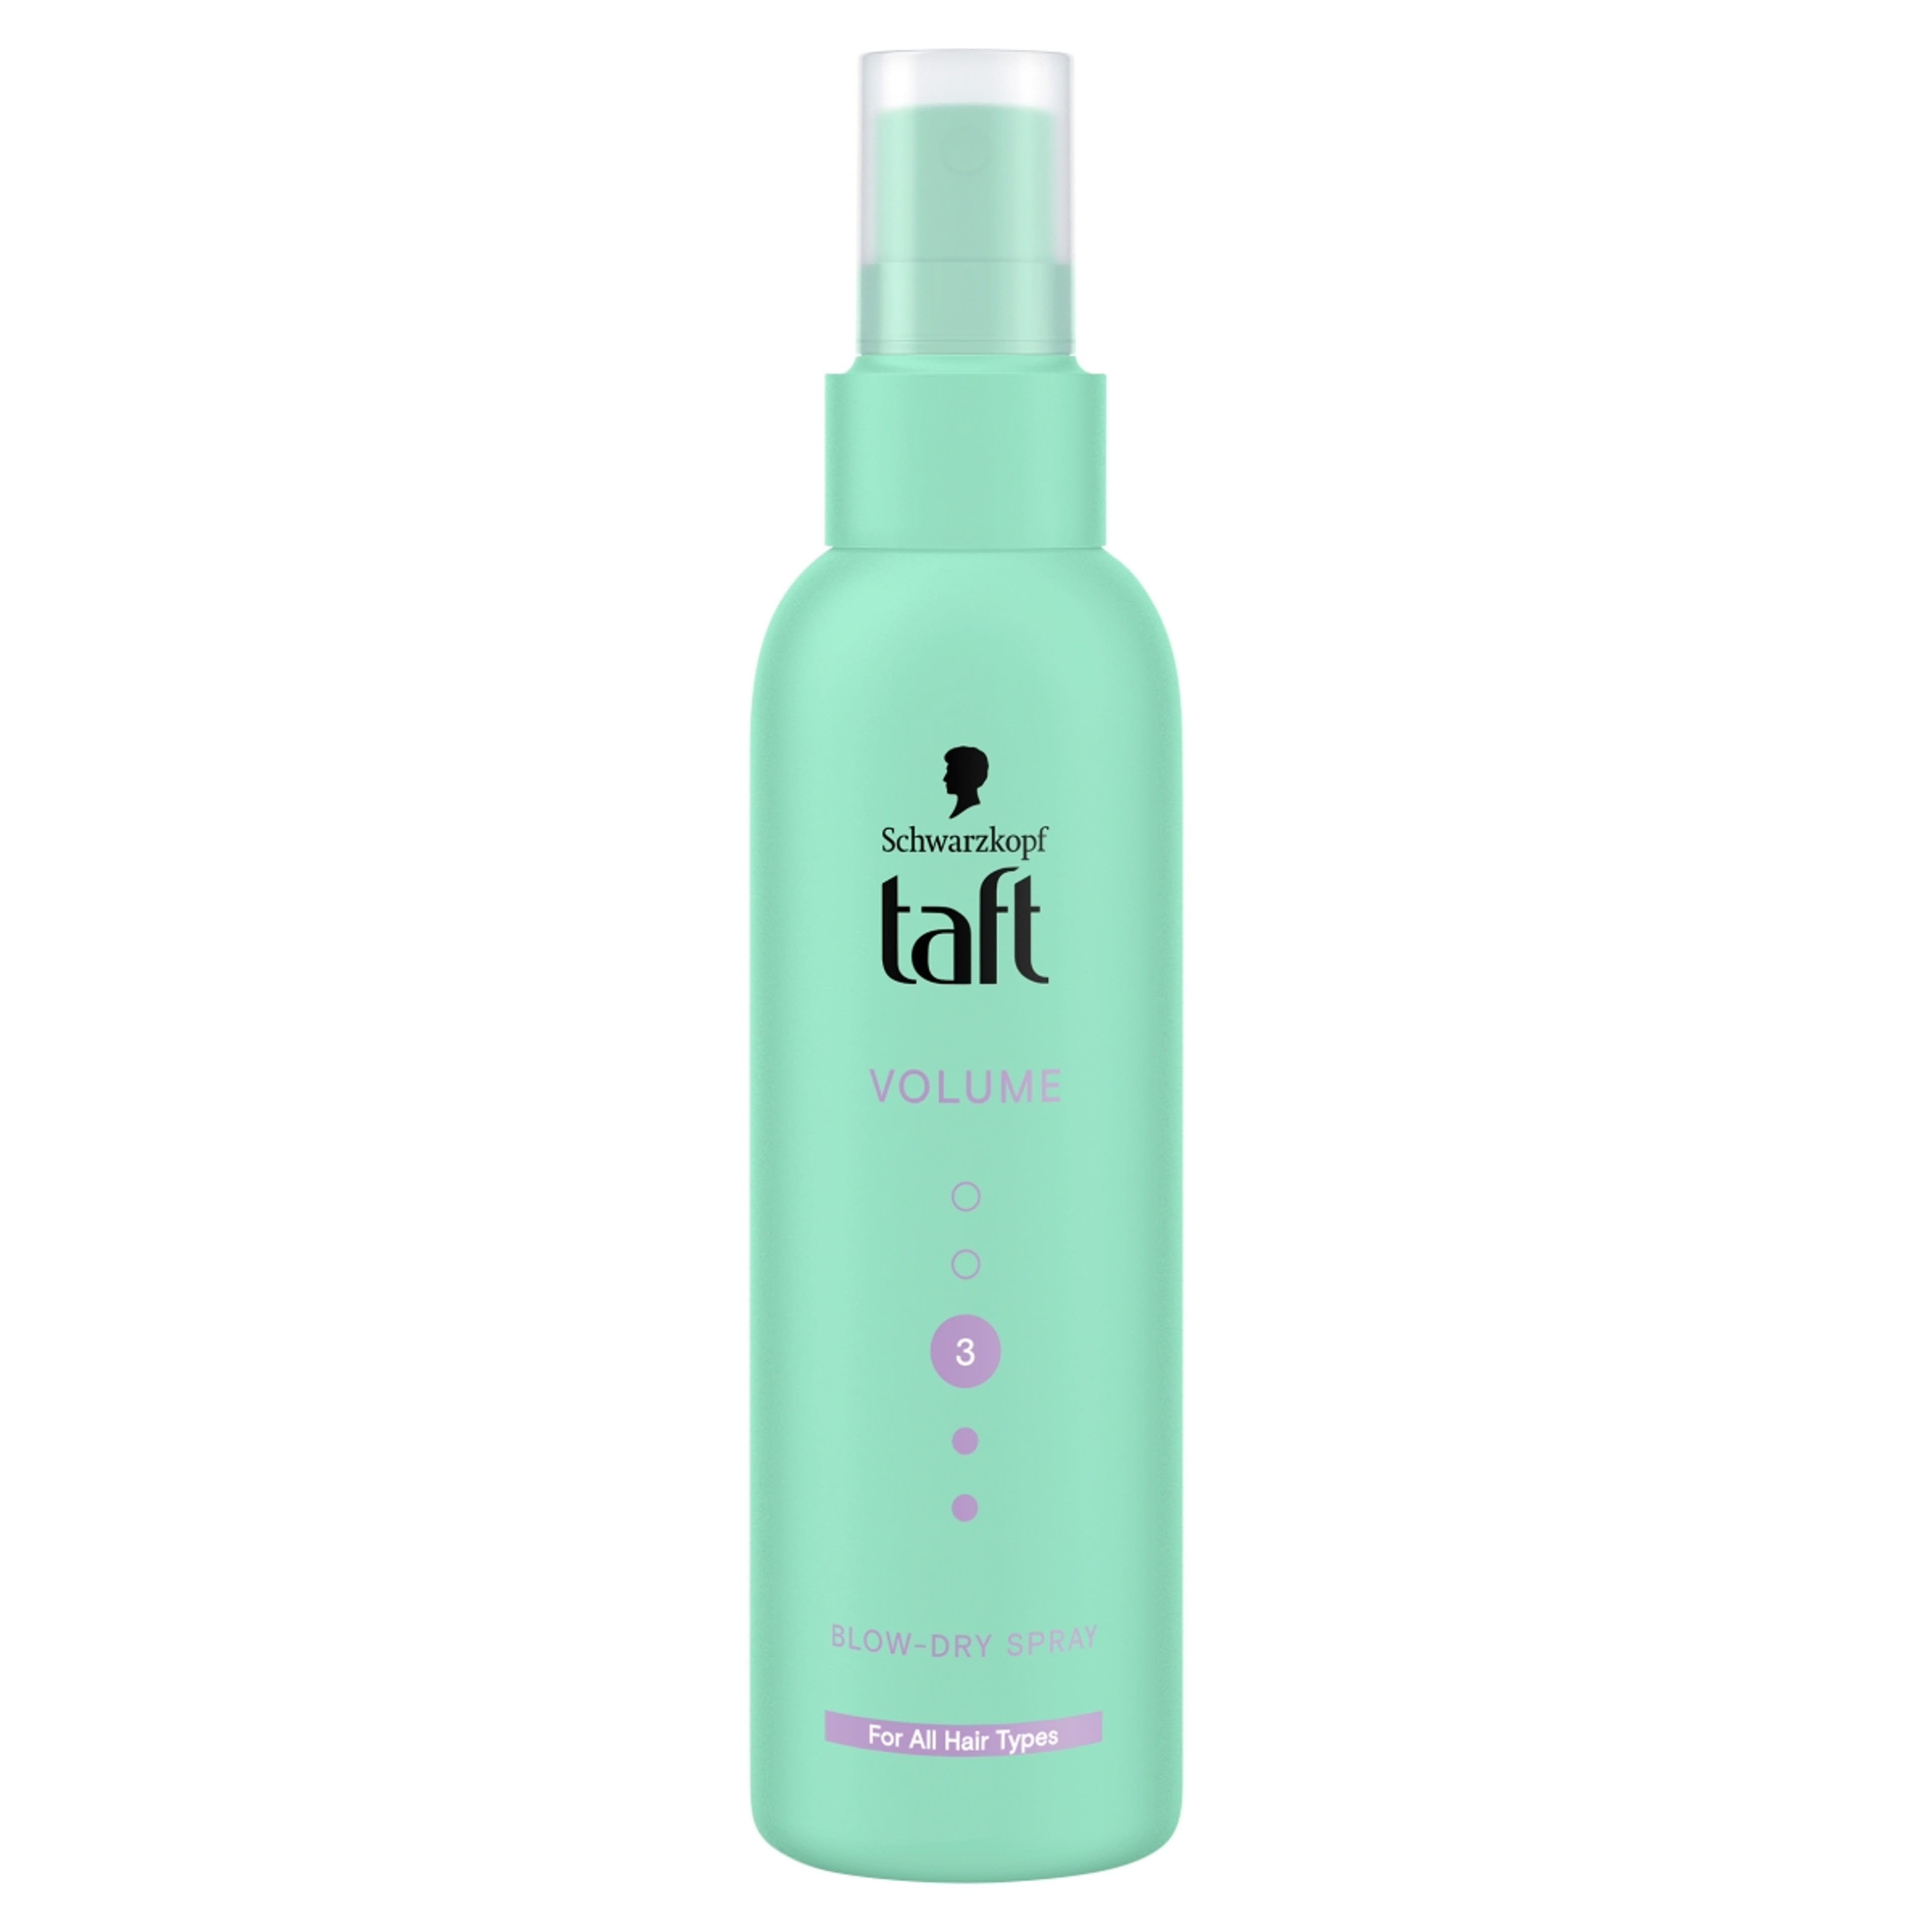 Taft hajformázó spray volumen hajszárítás előtt - 150 ml